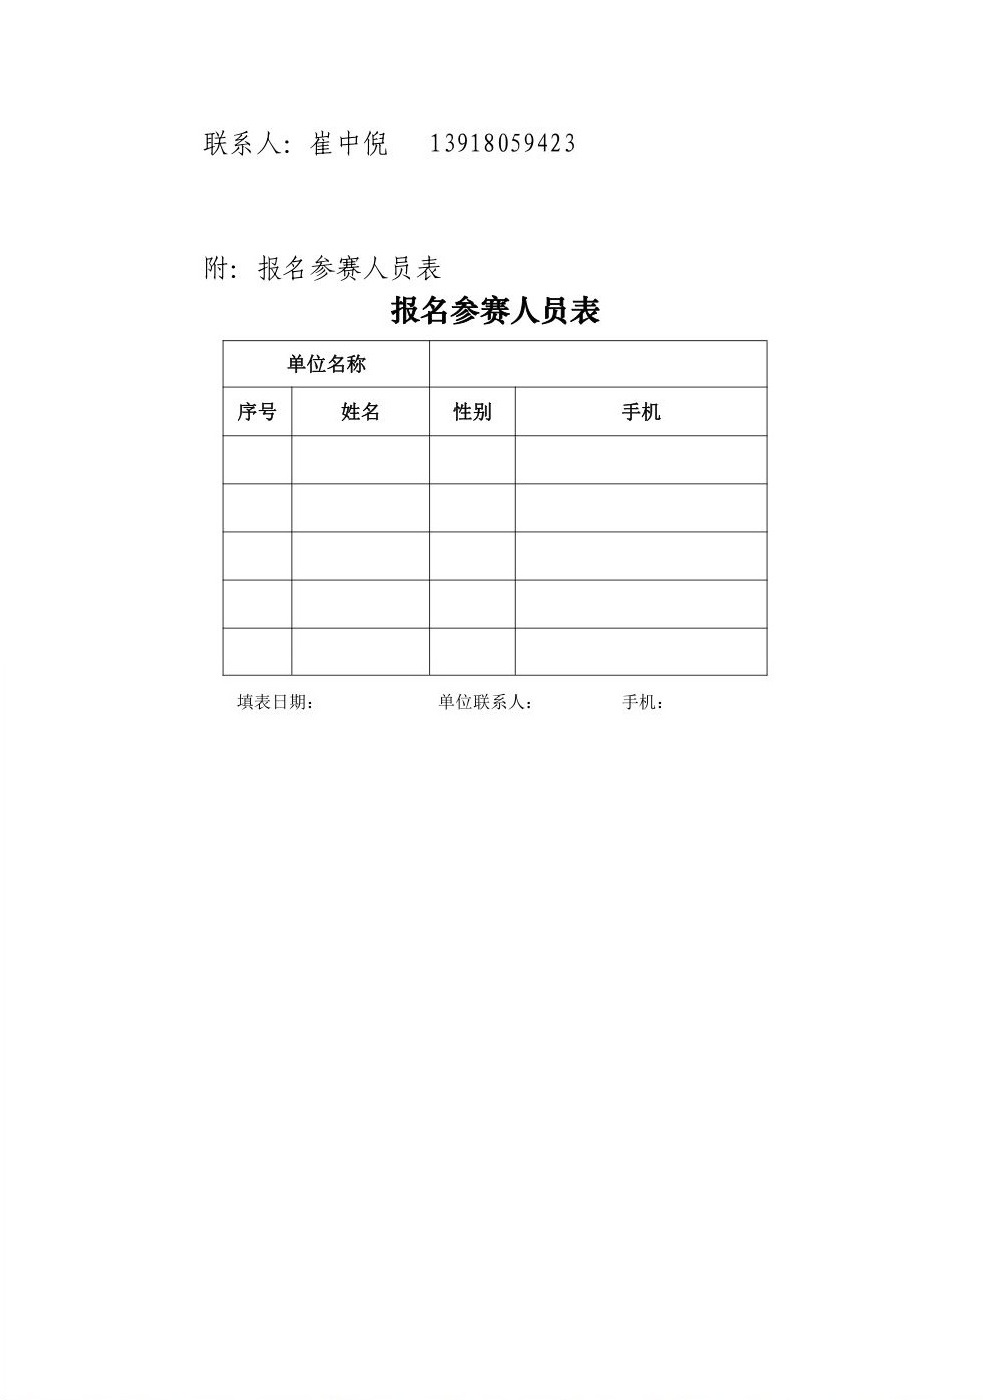 关于举办第二届“上海稀土杯” 羽毛球比赛的报名通知